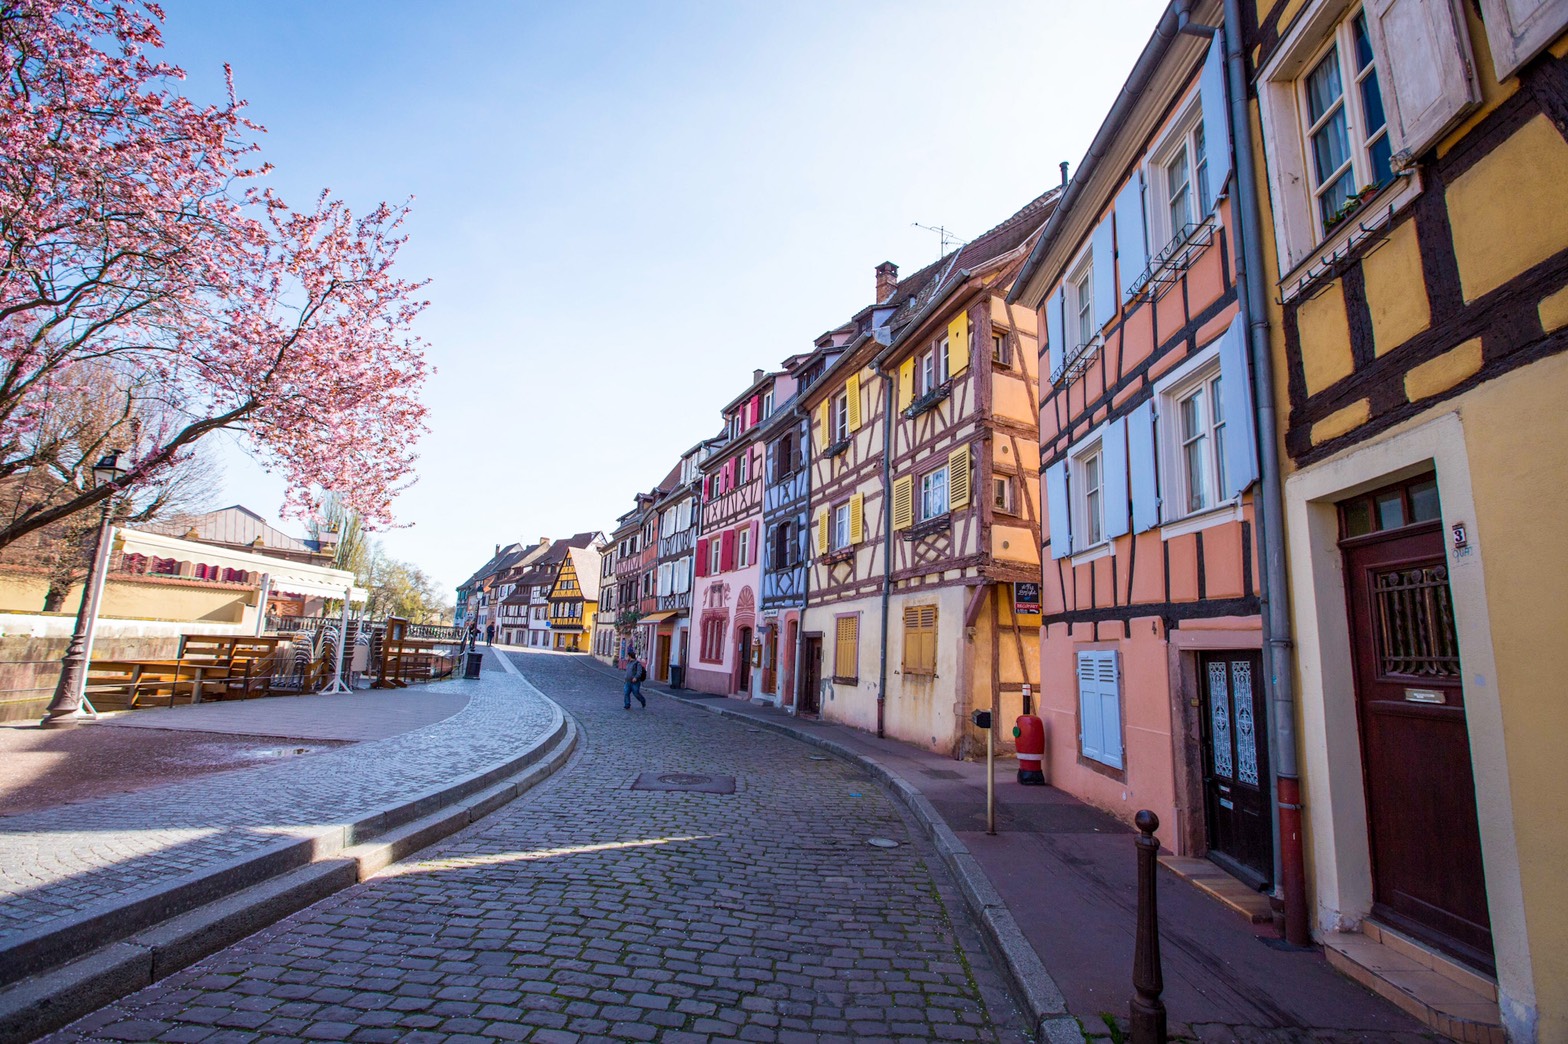 หมู่บ้านเทพนิยายแห่งแคว้นอาลซัส (Alsace) ประเทศฝรั่งเศส